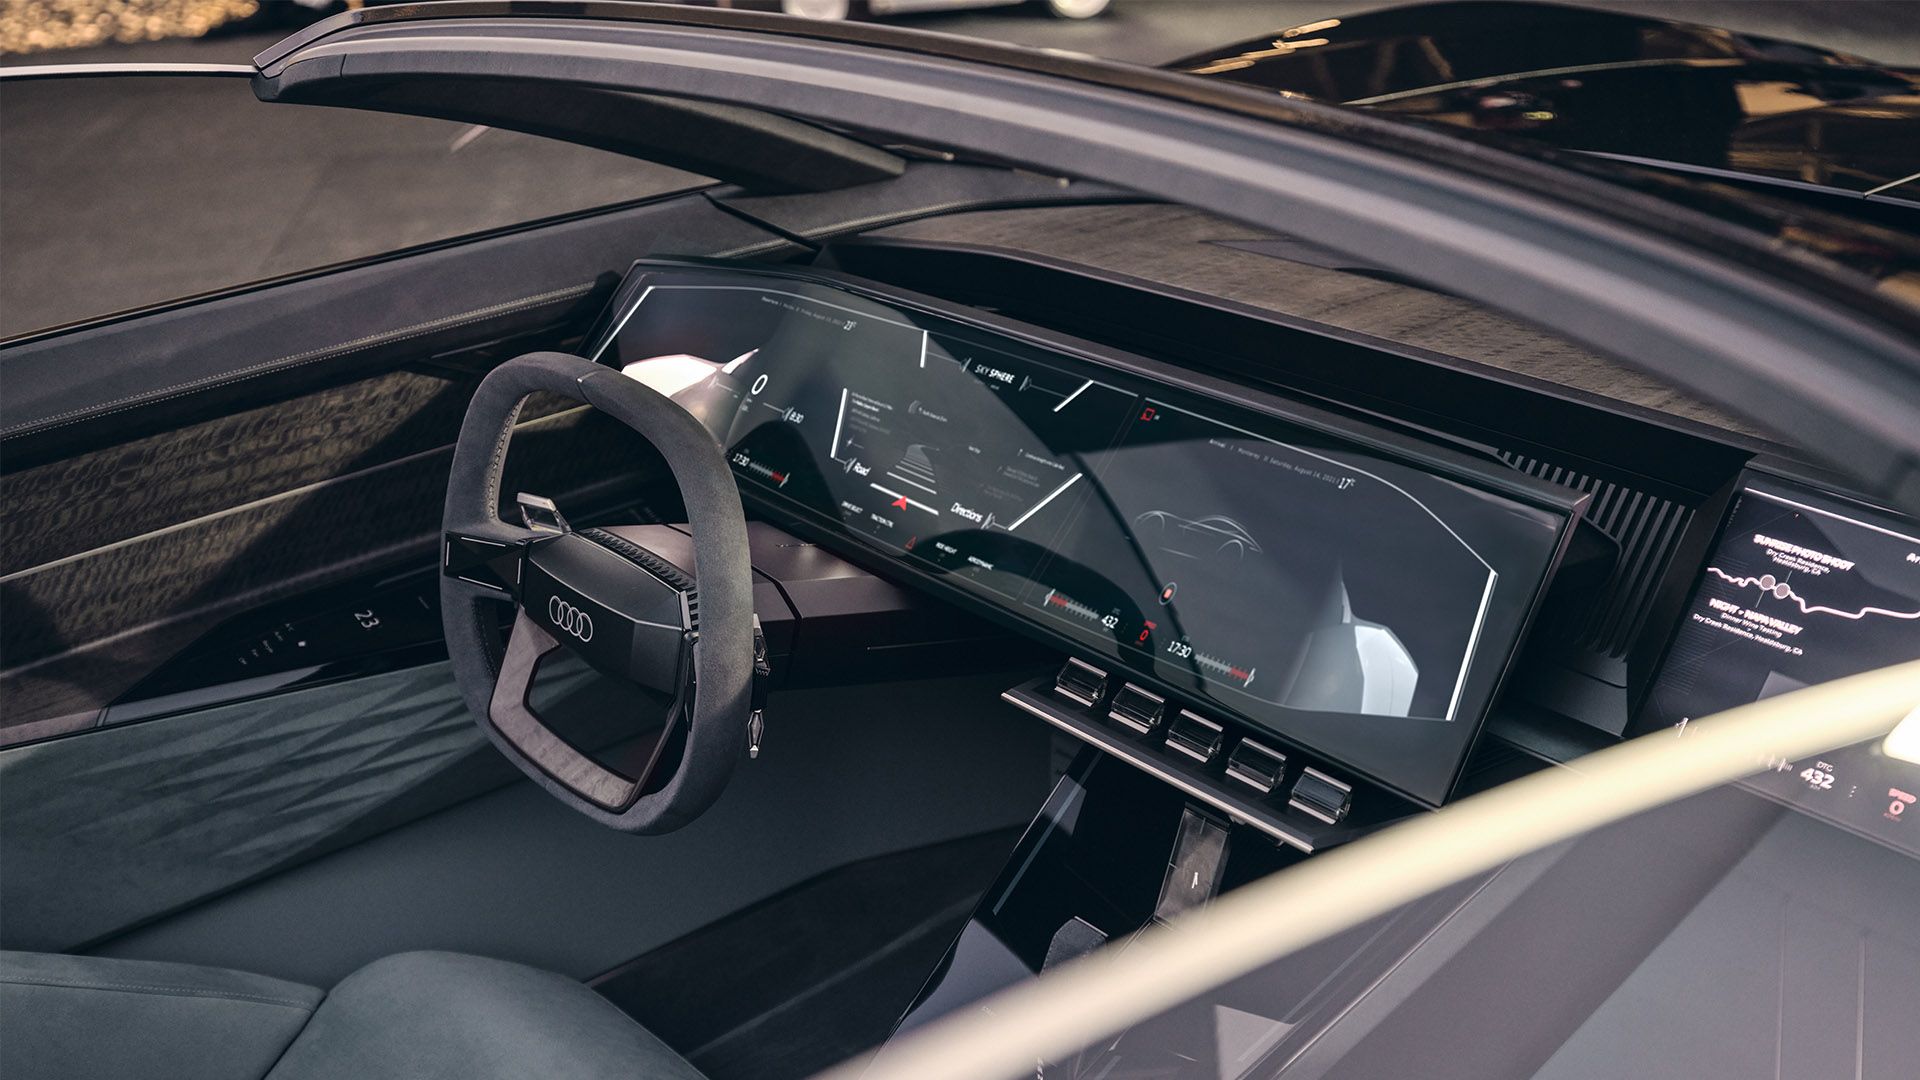 Zicht op bestuurdersstoel, pedalen, stuurwiel en monitors in de "Sports"-modus van de Audi skysphere concept.